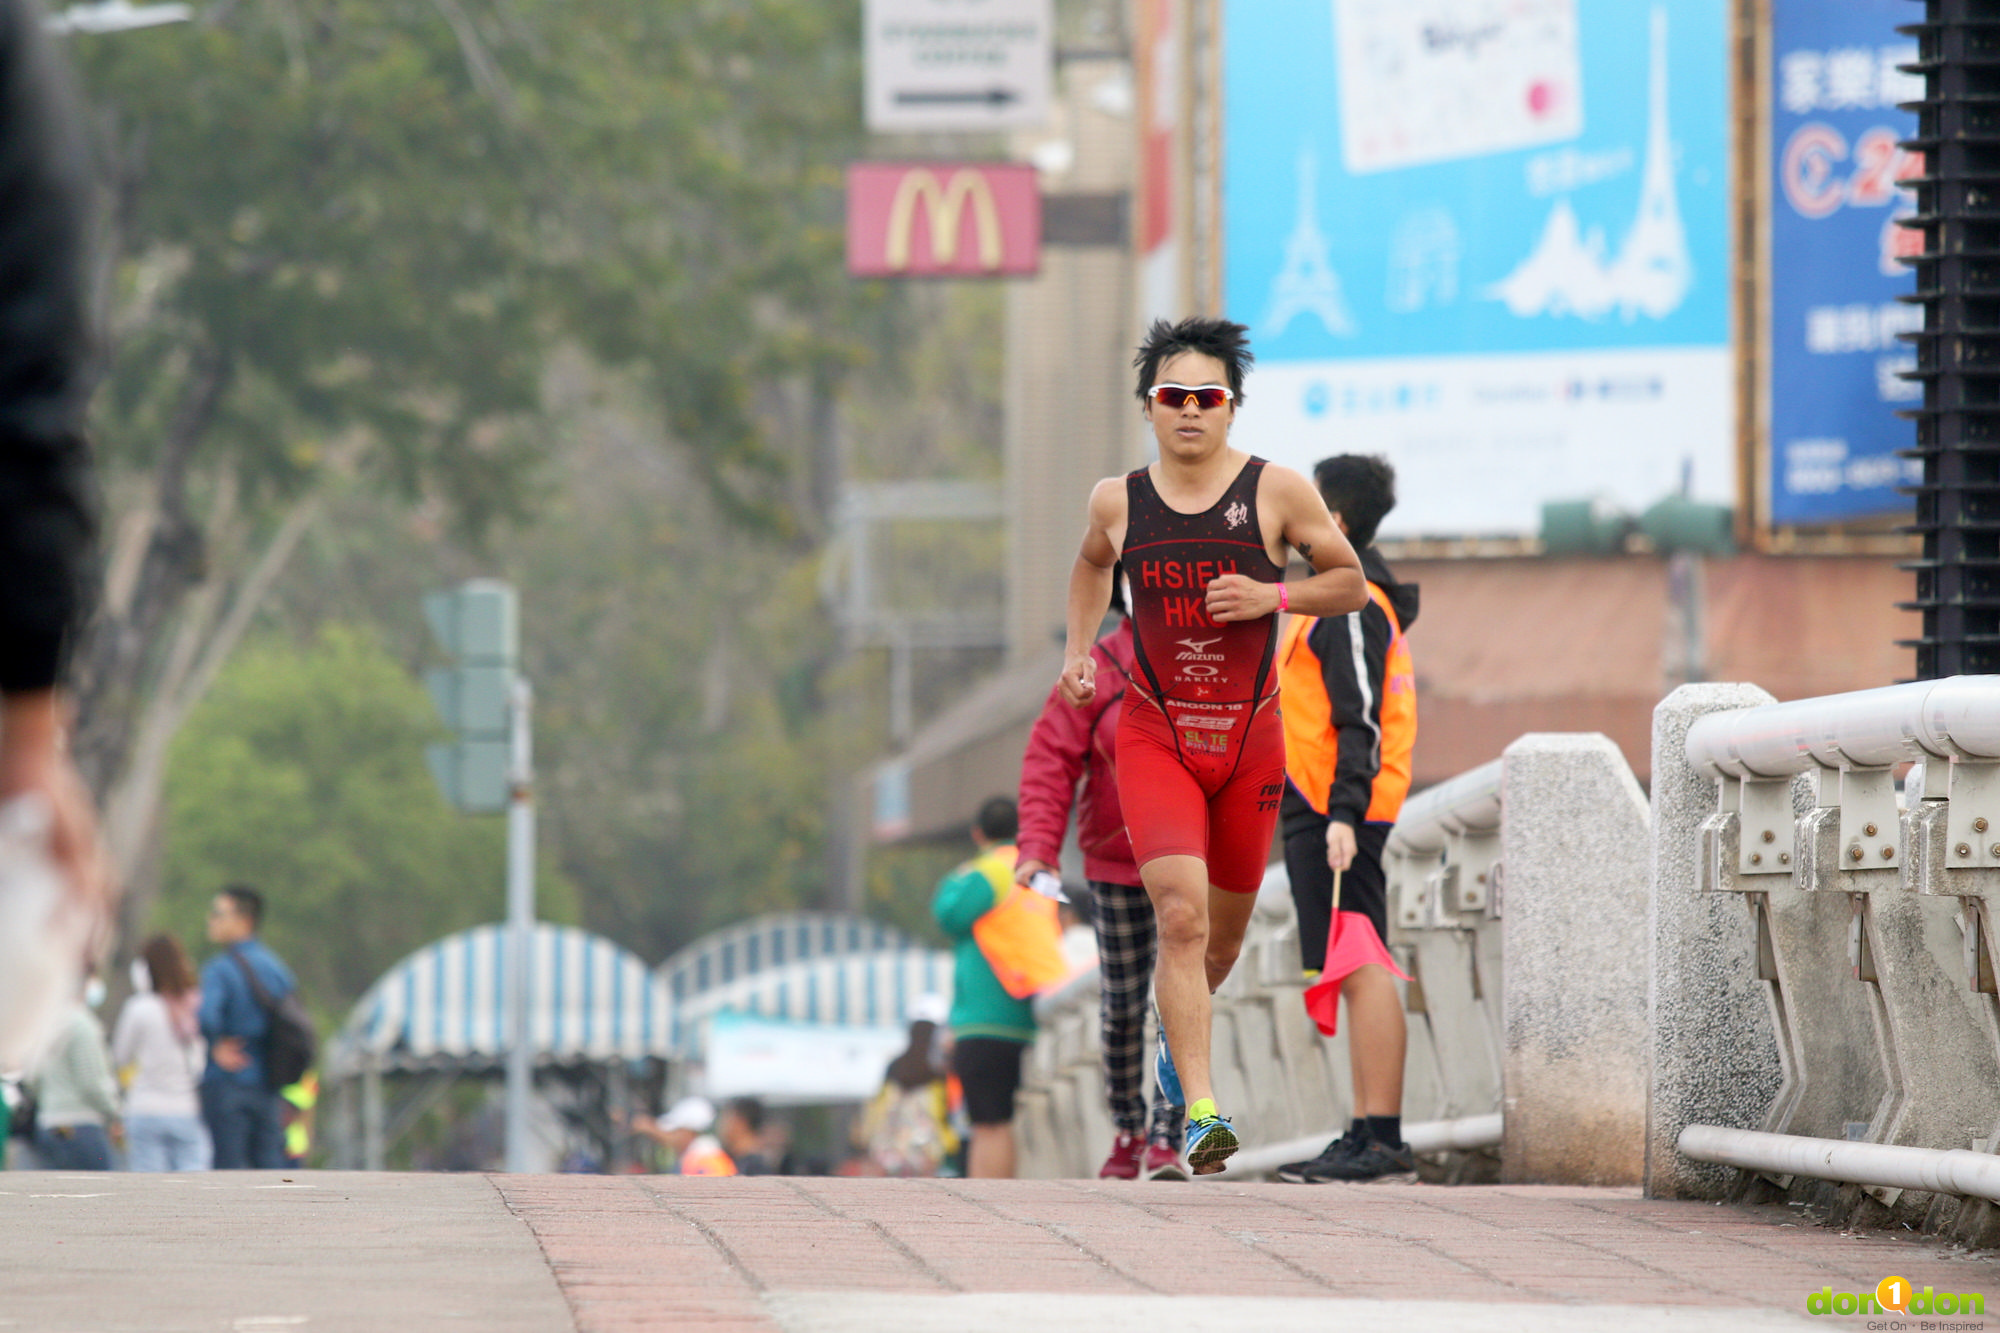 高雄在地香港選手 Joson Heish 拿下 M35-39 歲組第一